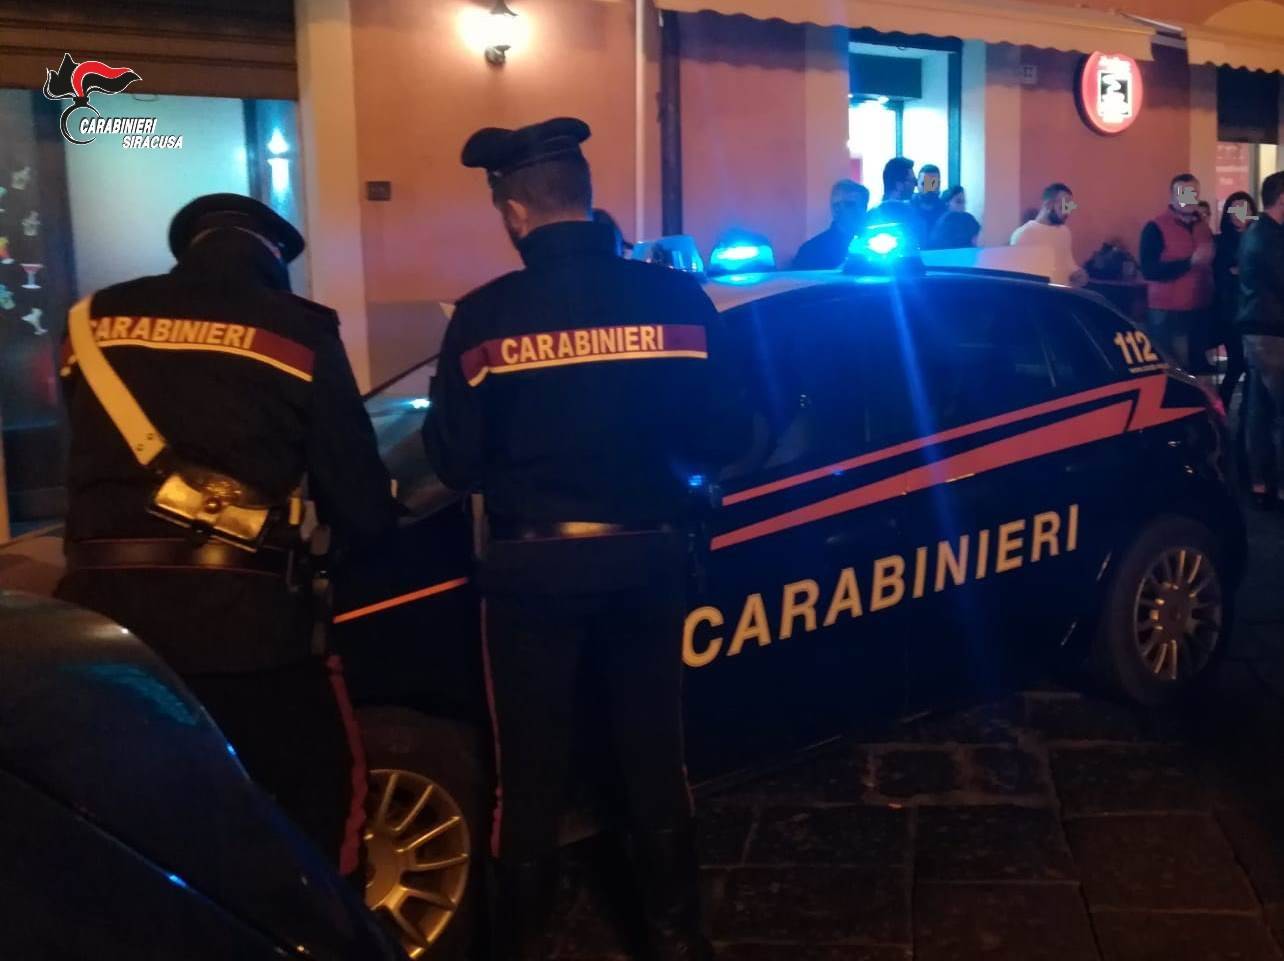 Carabinieri-Bar-repertorio-1.jpg